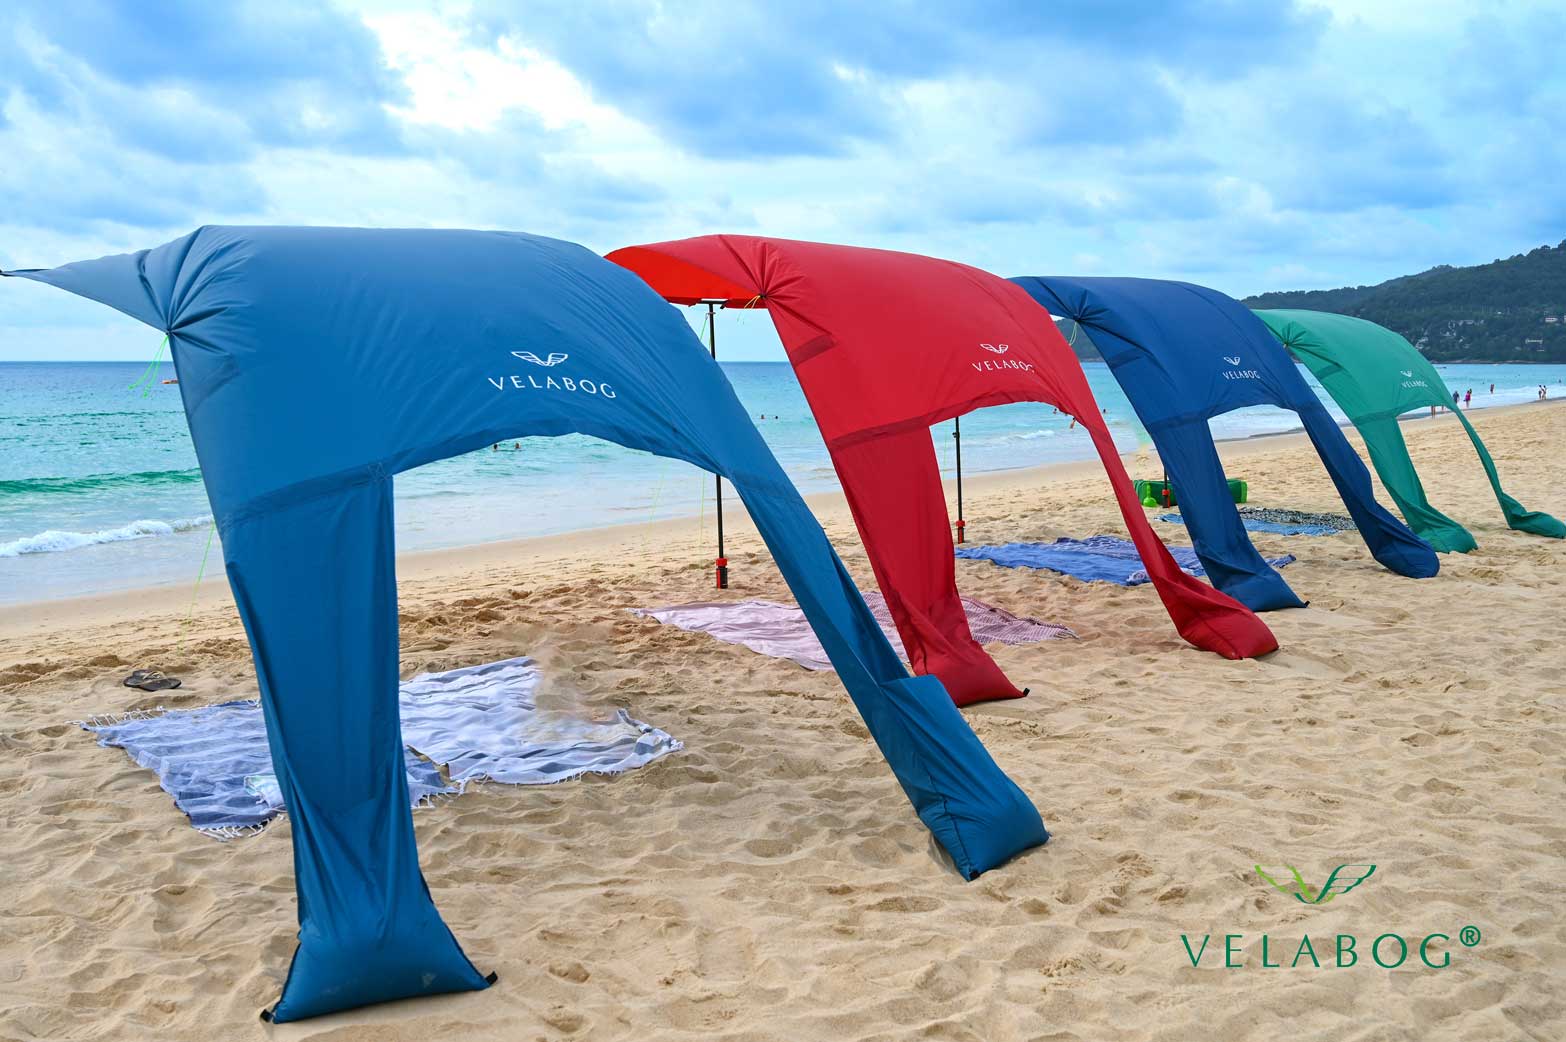 Cztery żagle słoneczne Velabog «Breeze» jako przewiewna ochrona przeciwsłoneczna na plaży. Do użytku przy lekkim lub silnym wietrze. Widok od tyłu.